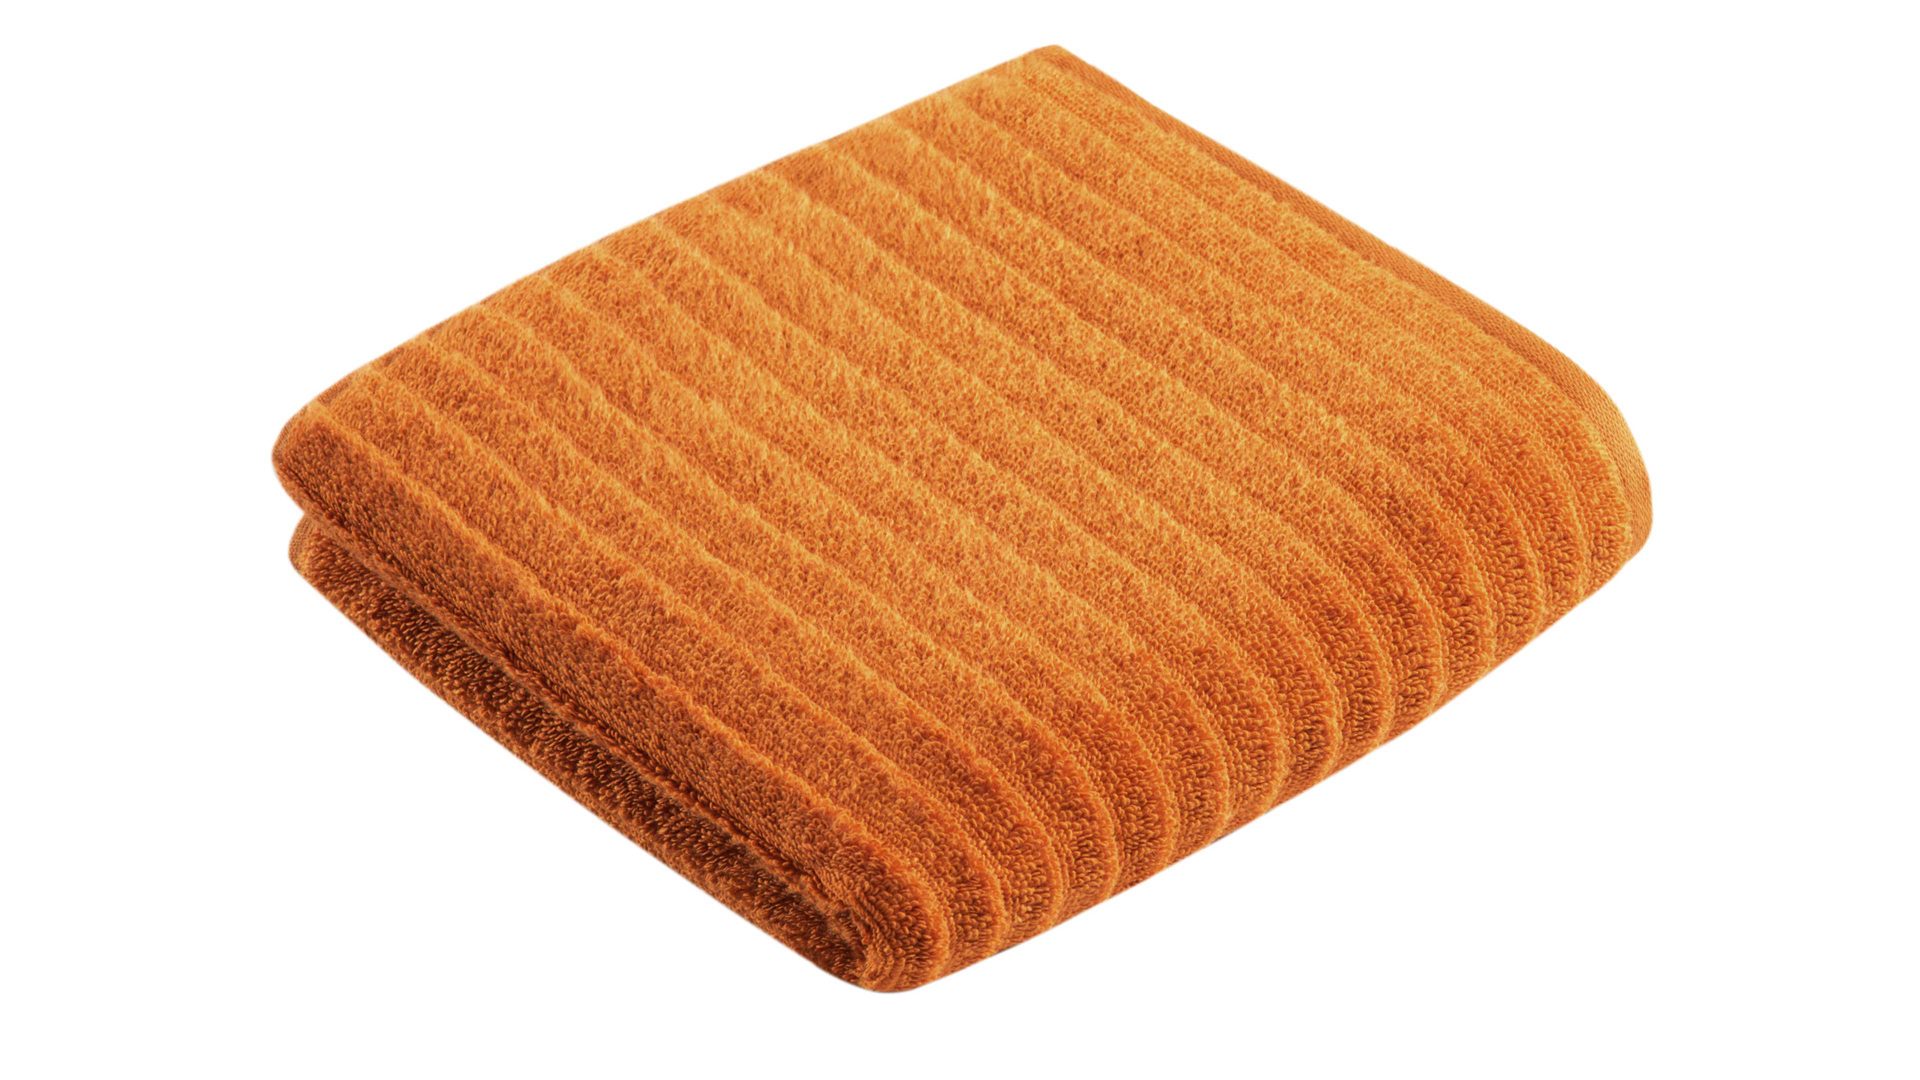 Handtuch Vossen aus Naturfaser in Orange VOSSEN® Frottee-Serie Mystic - Handtuch fuchsfarbene Baumwolle - ca. 50 x 100 cm